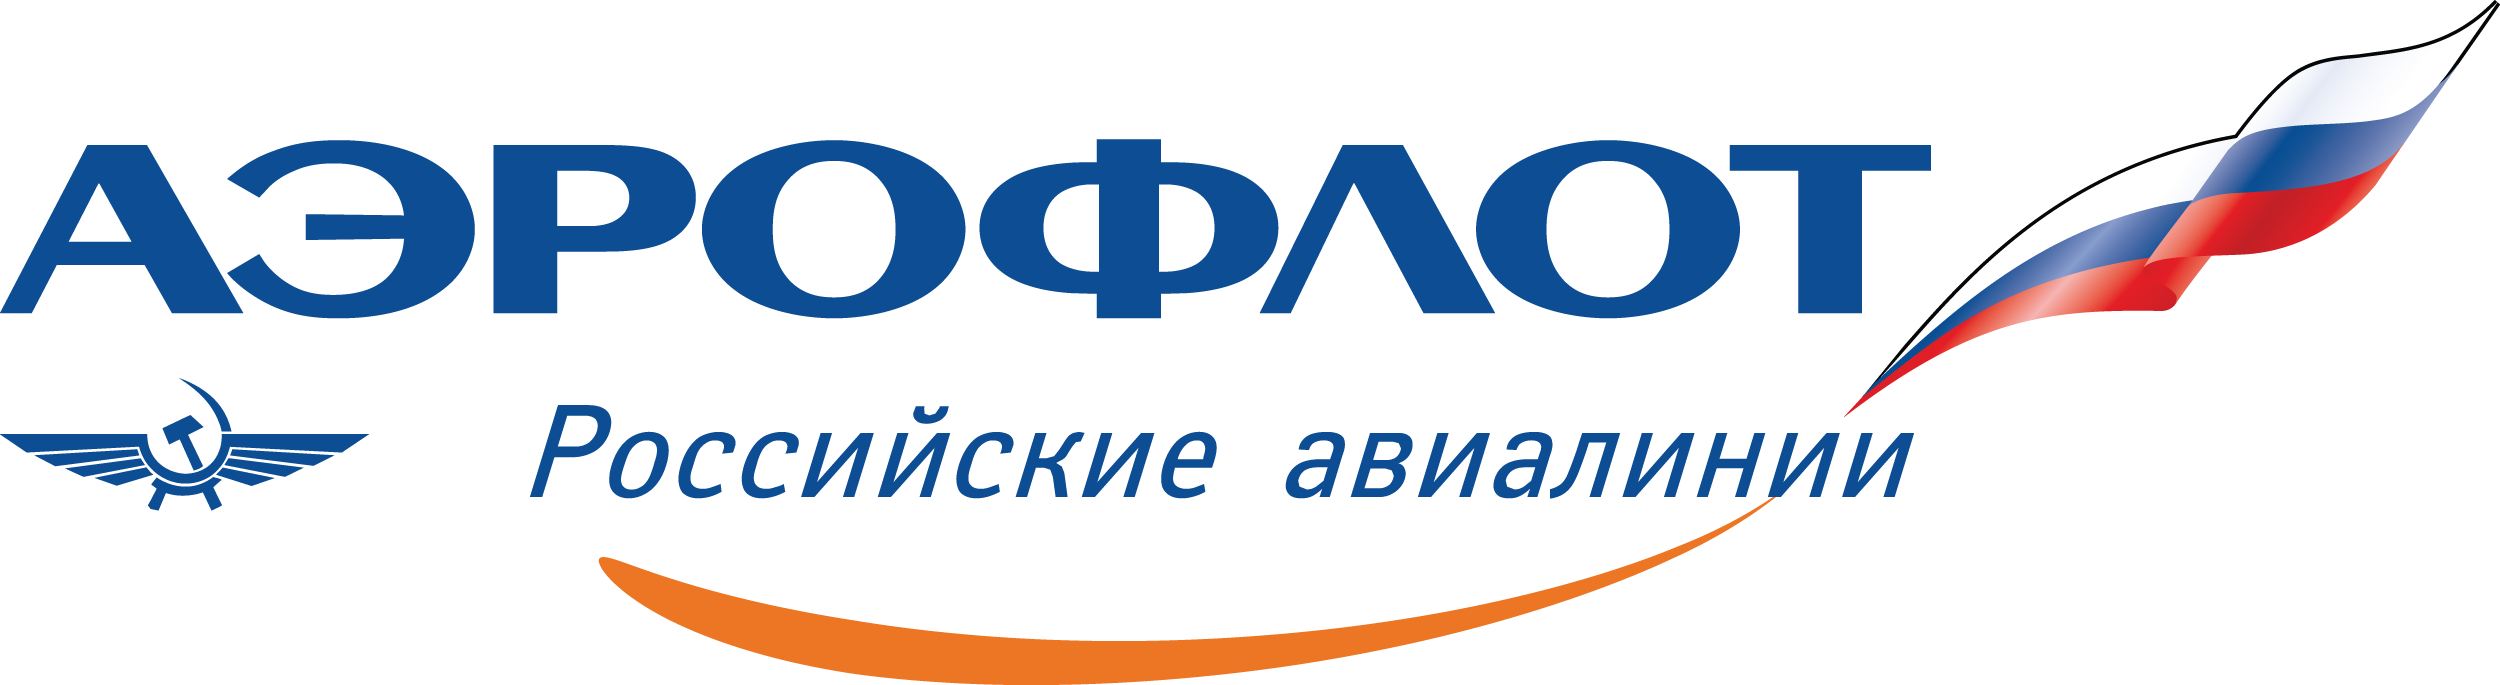 Аэрофлот - Российские авиалинии - Aeroflot - авиакомпания